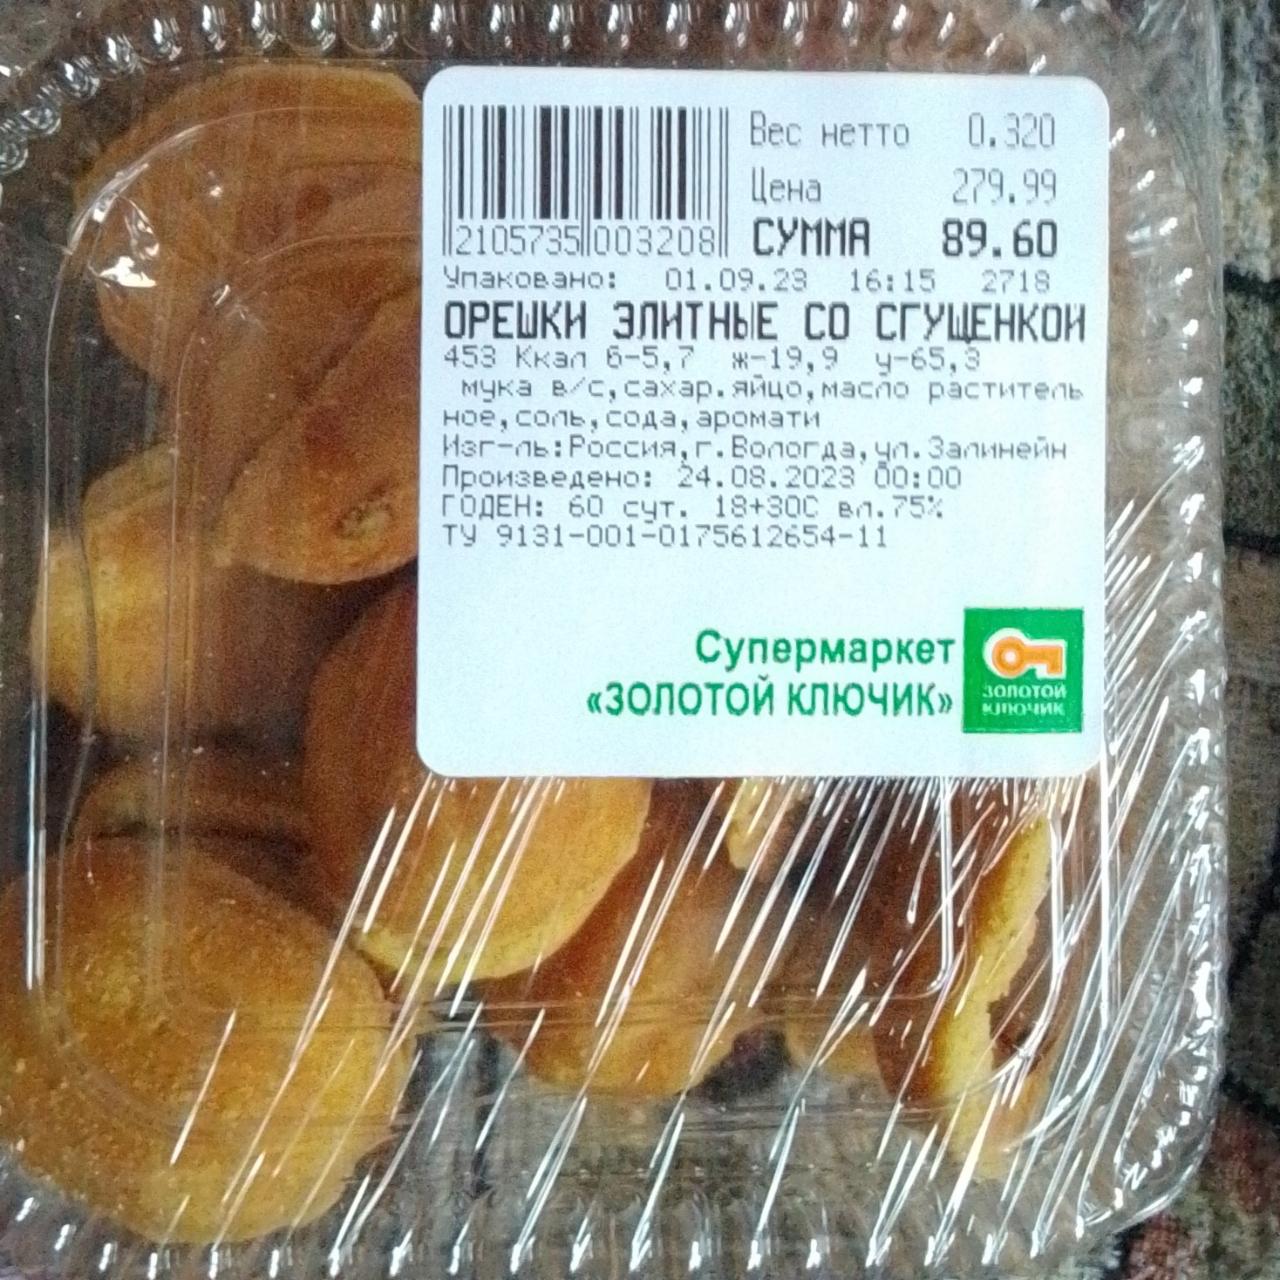 Фото - печенье орешки элитные со сгущенкой Супермаркет Золотой ключик